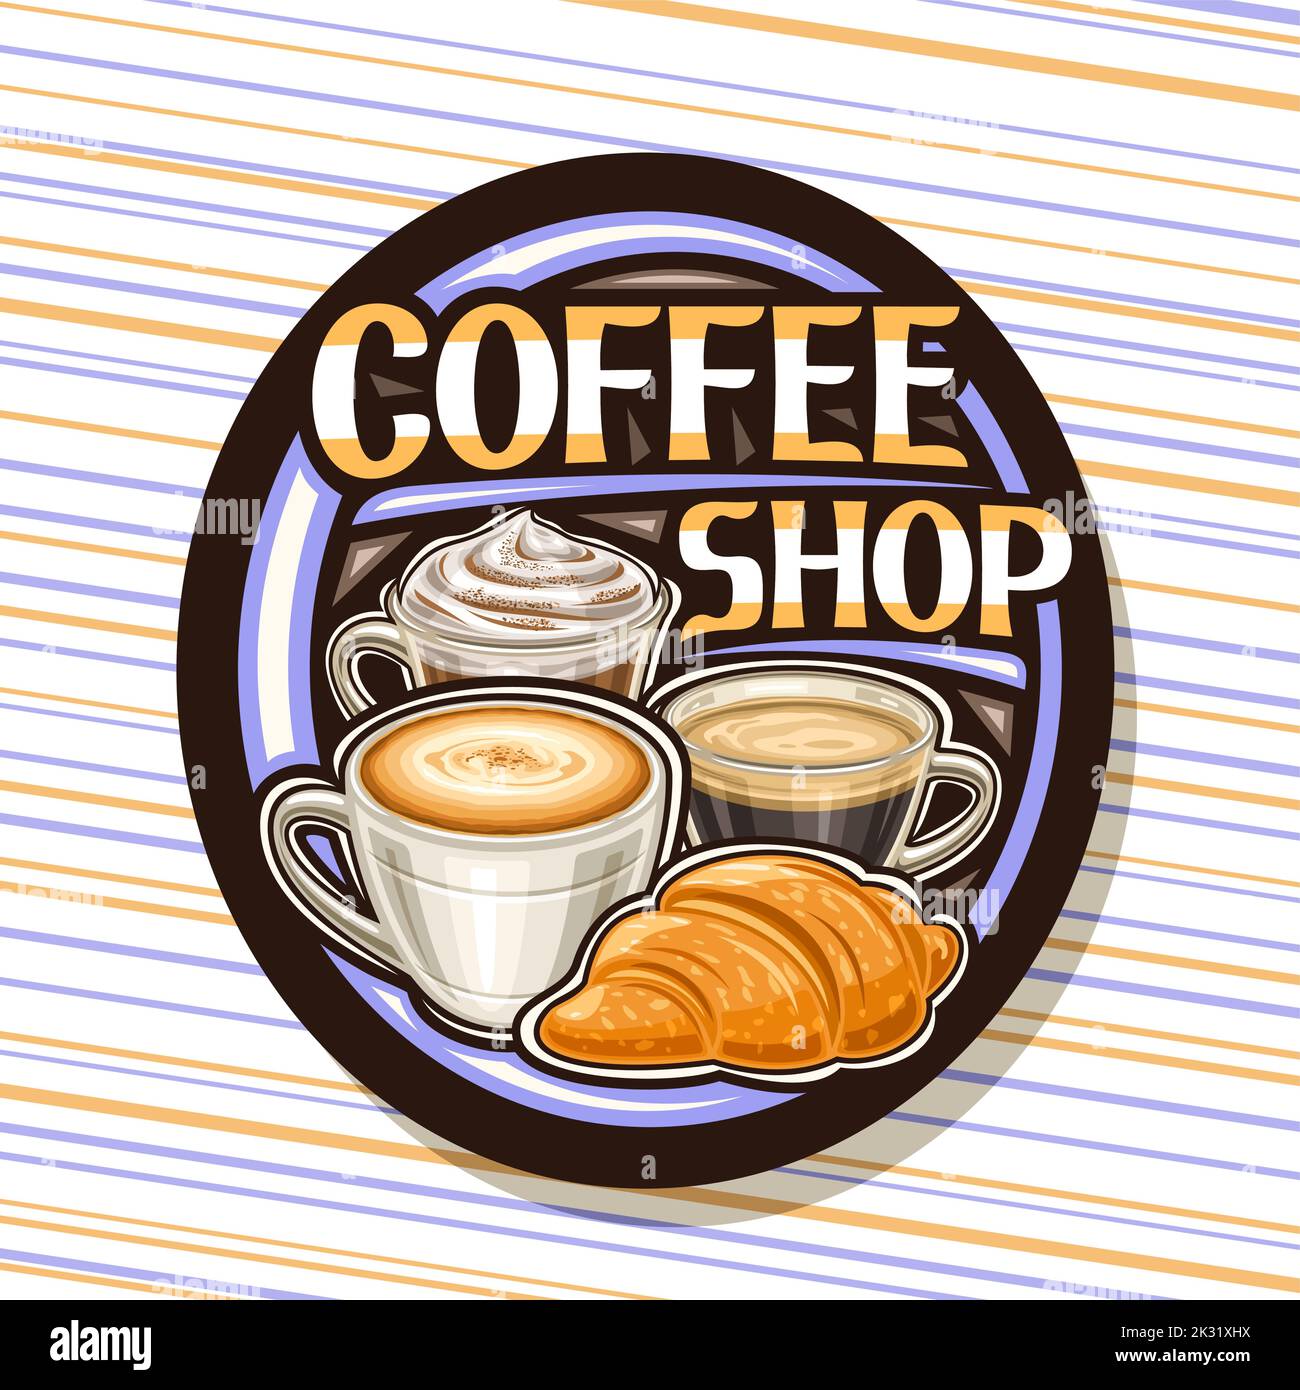 Logo Vector pour Coffee Shop, panneau d'affichage décoratif noir avec illustration de 3 tasses de café différentes, croissant français et lettrage unique pour le marron Illustration de Vecteur